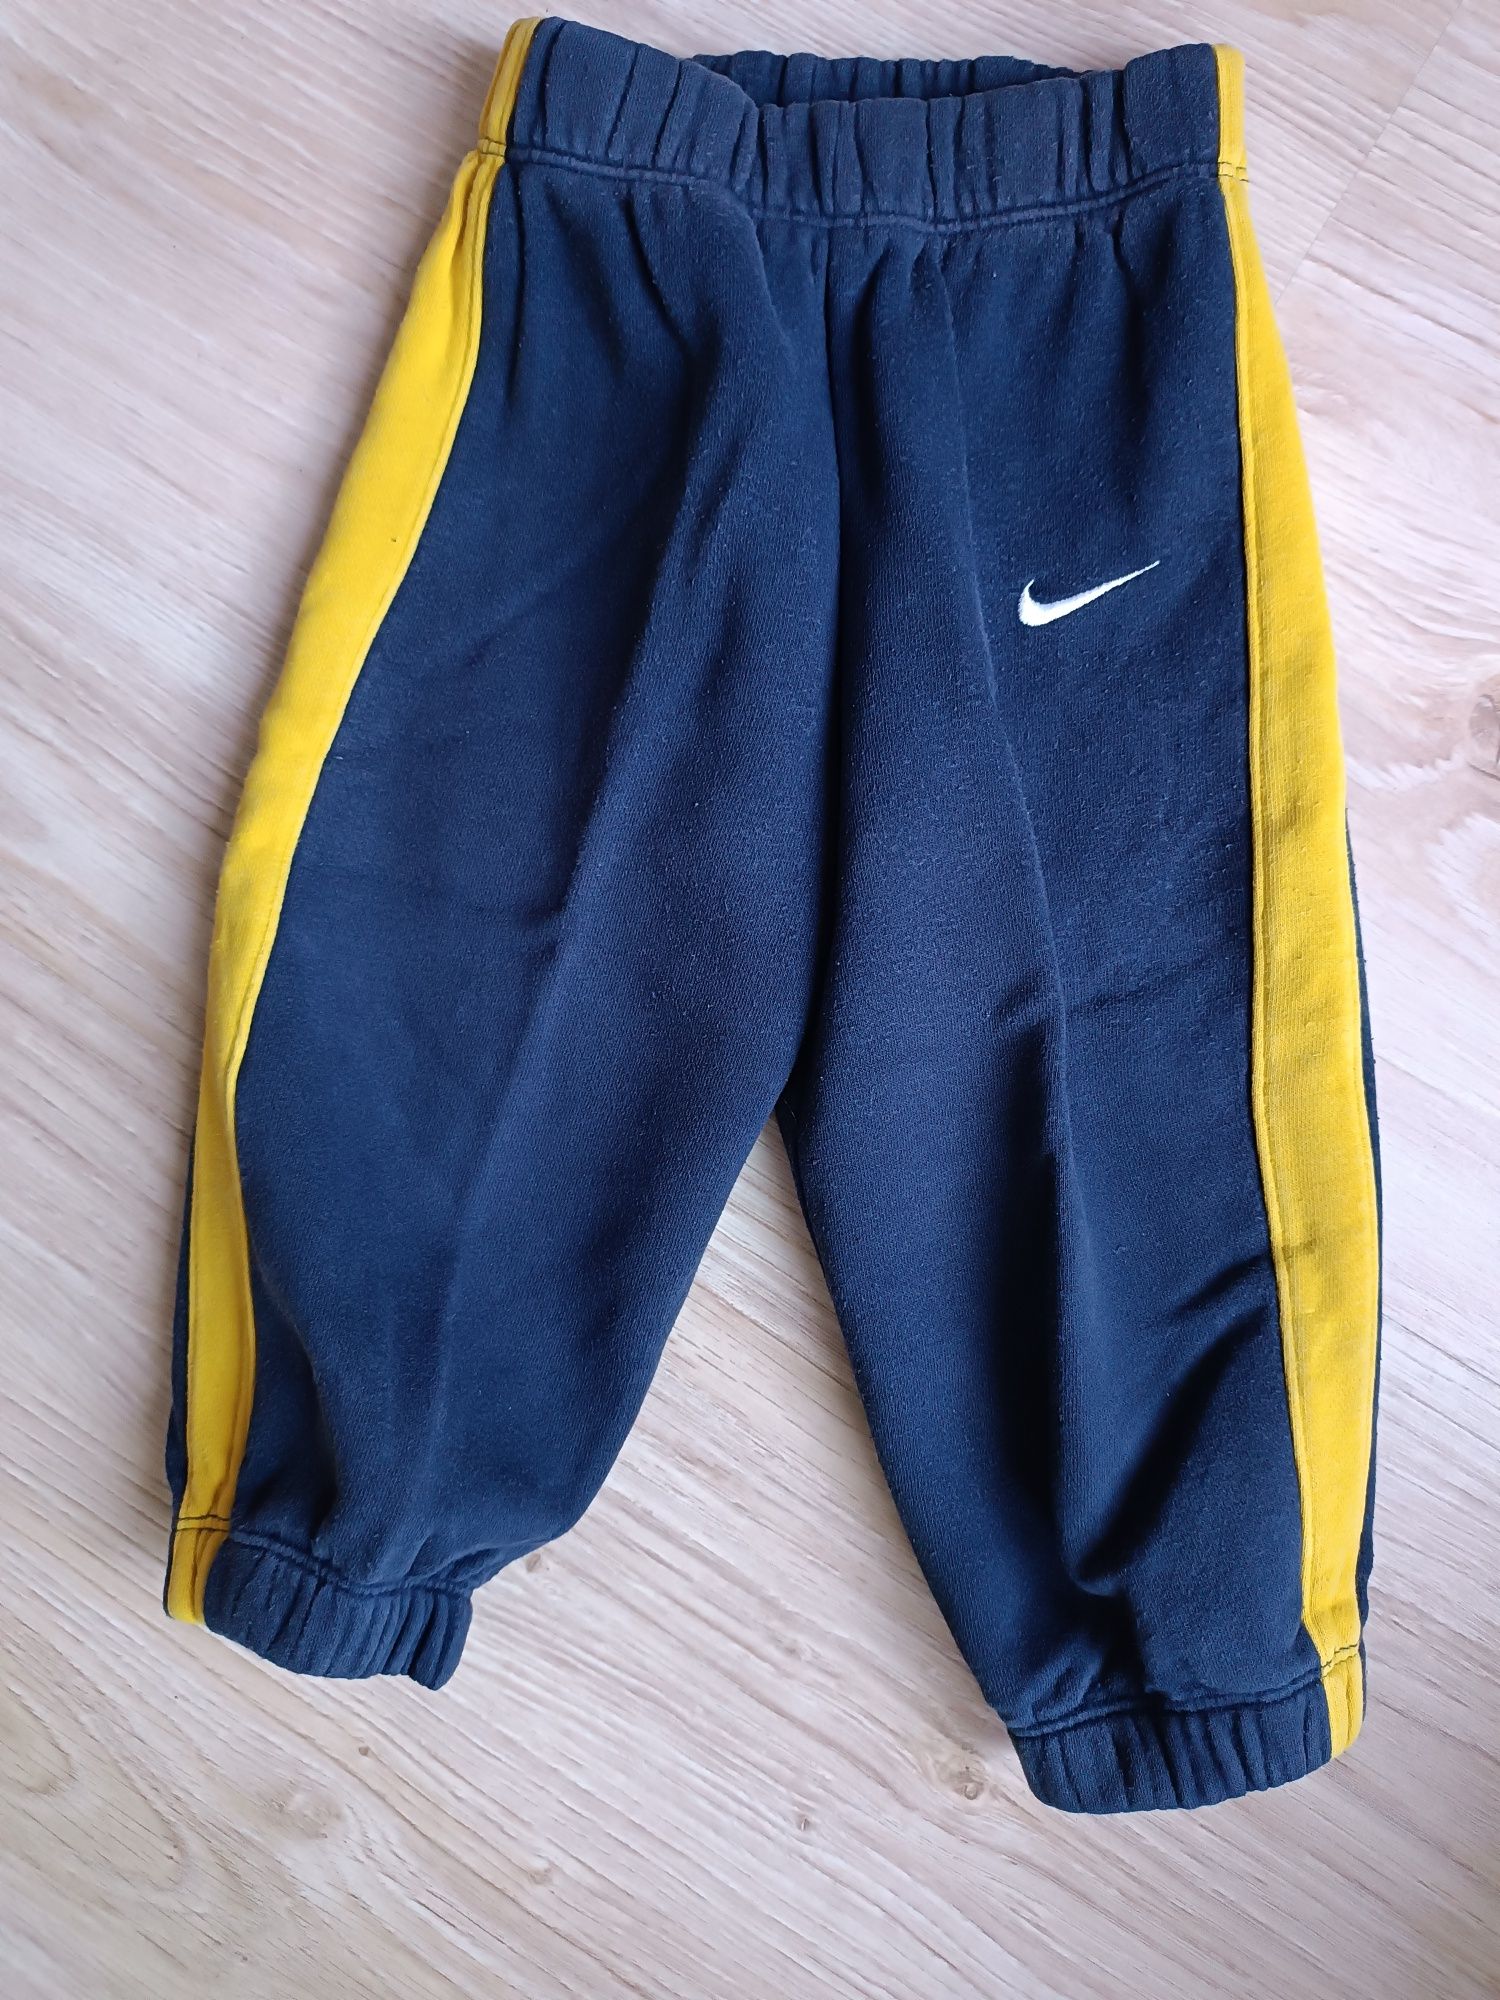 Spodnie dresowe chłopięce Nike, rozmiar 86/92